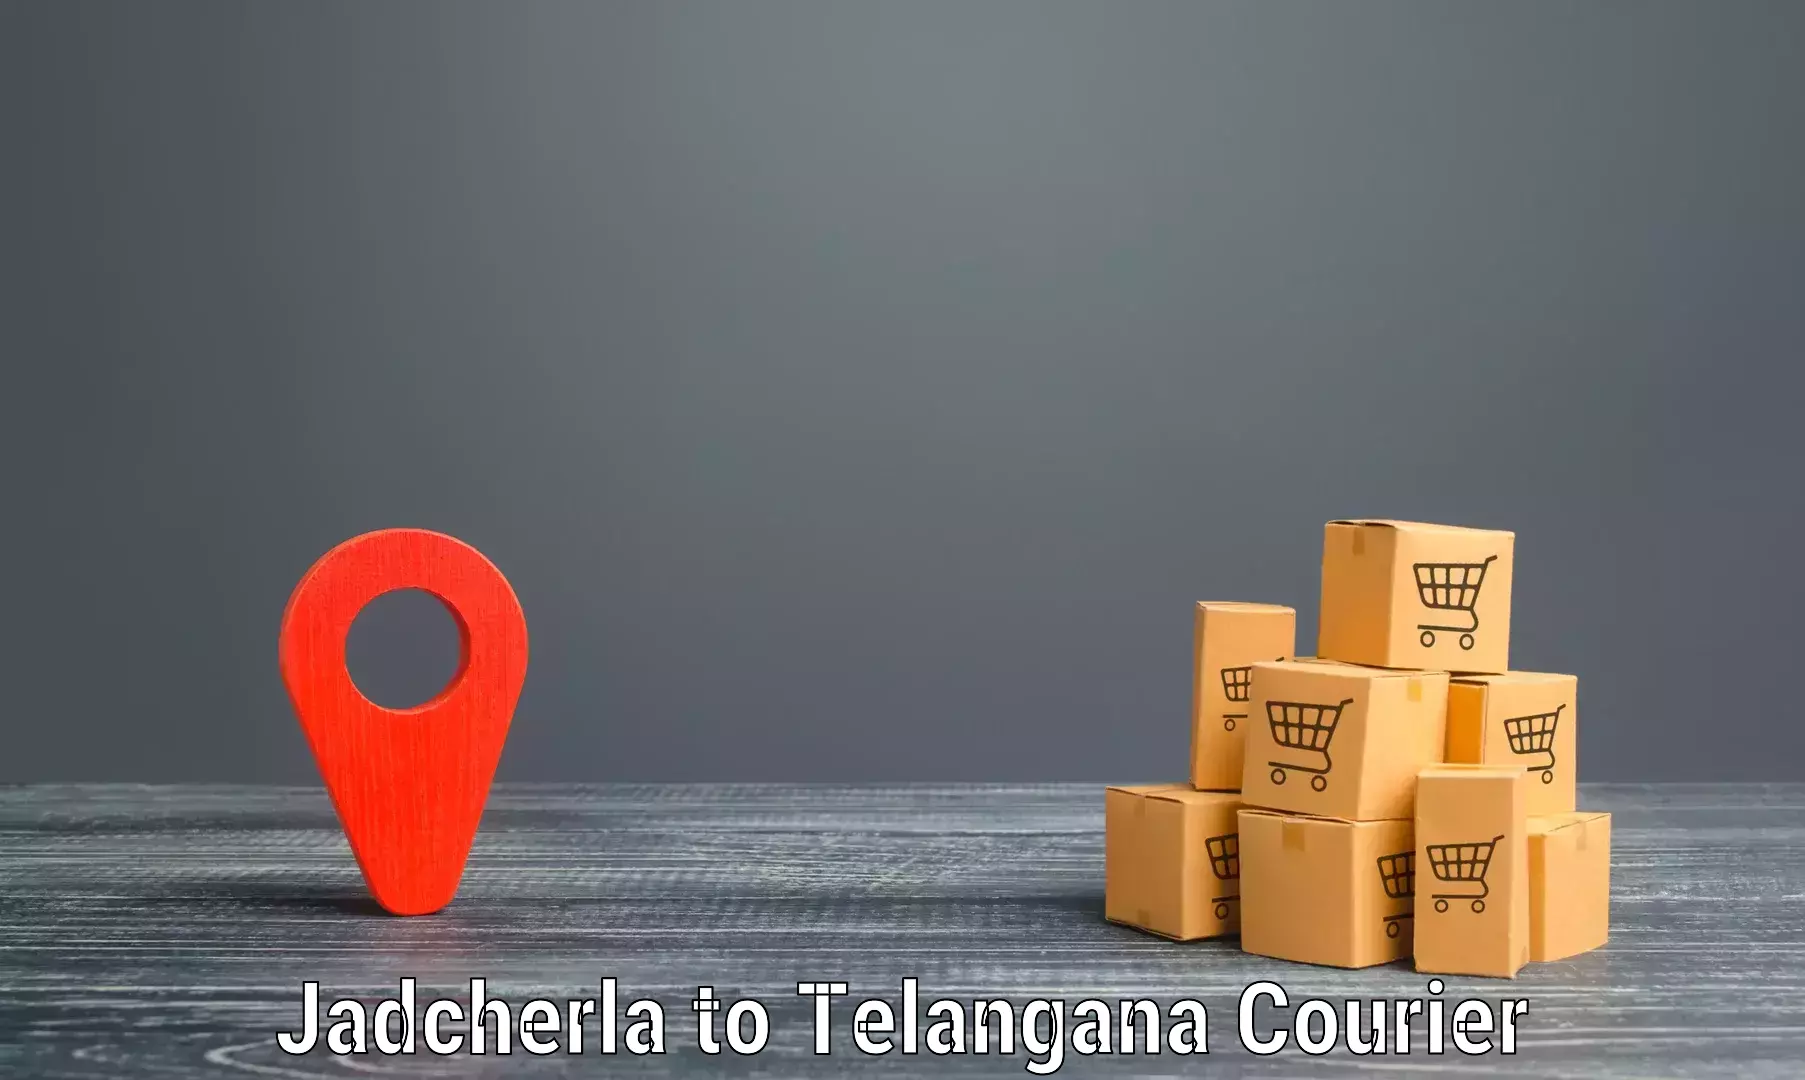 Local delivery service Jadcherla to Kamalapur